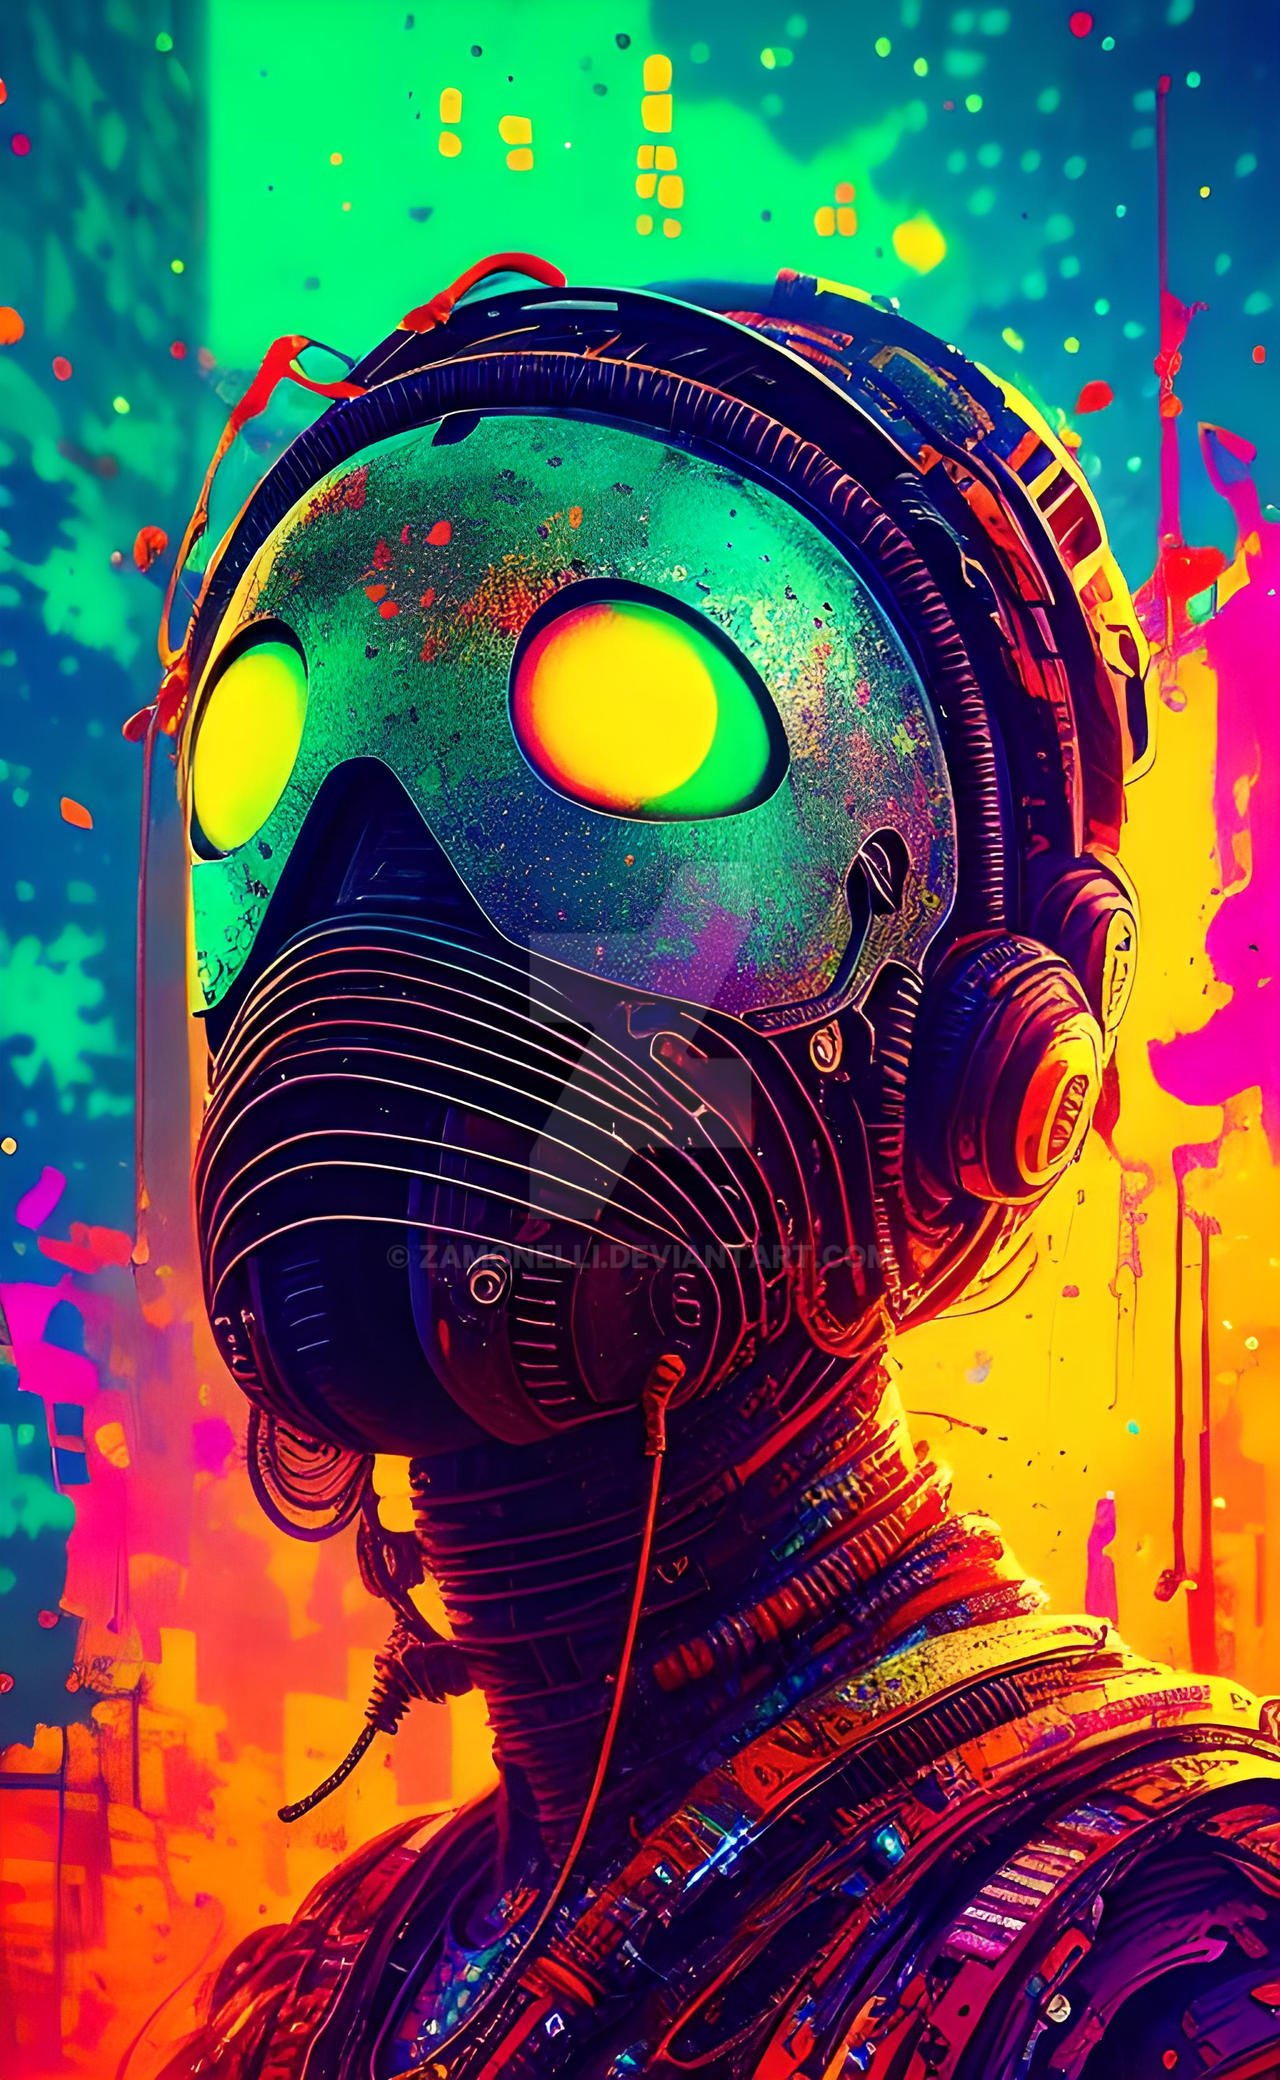 Cyberpunk Girl Wallpaper by Zamonelli on DeviantArt